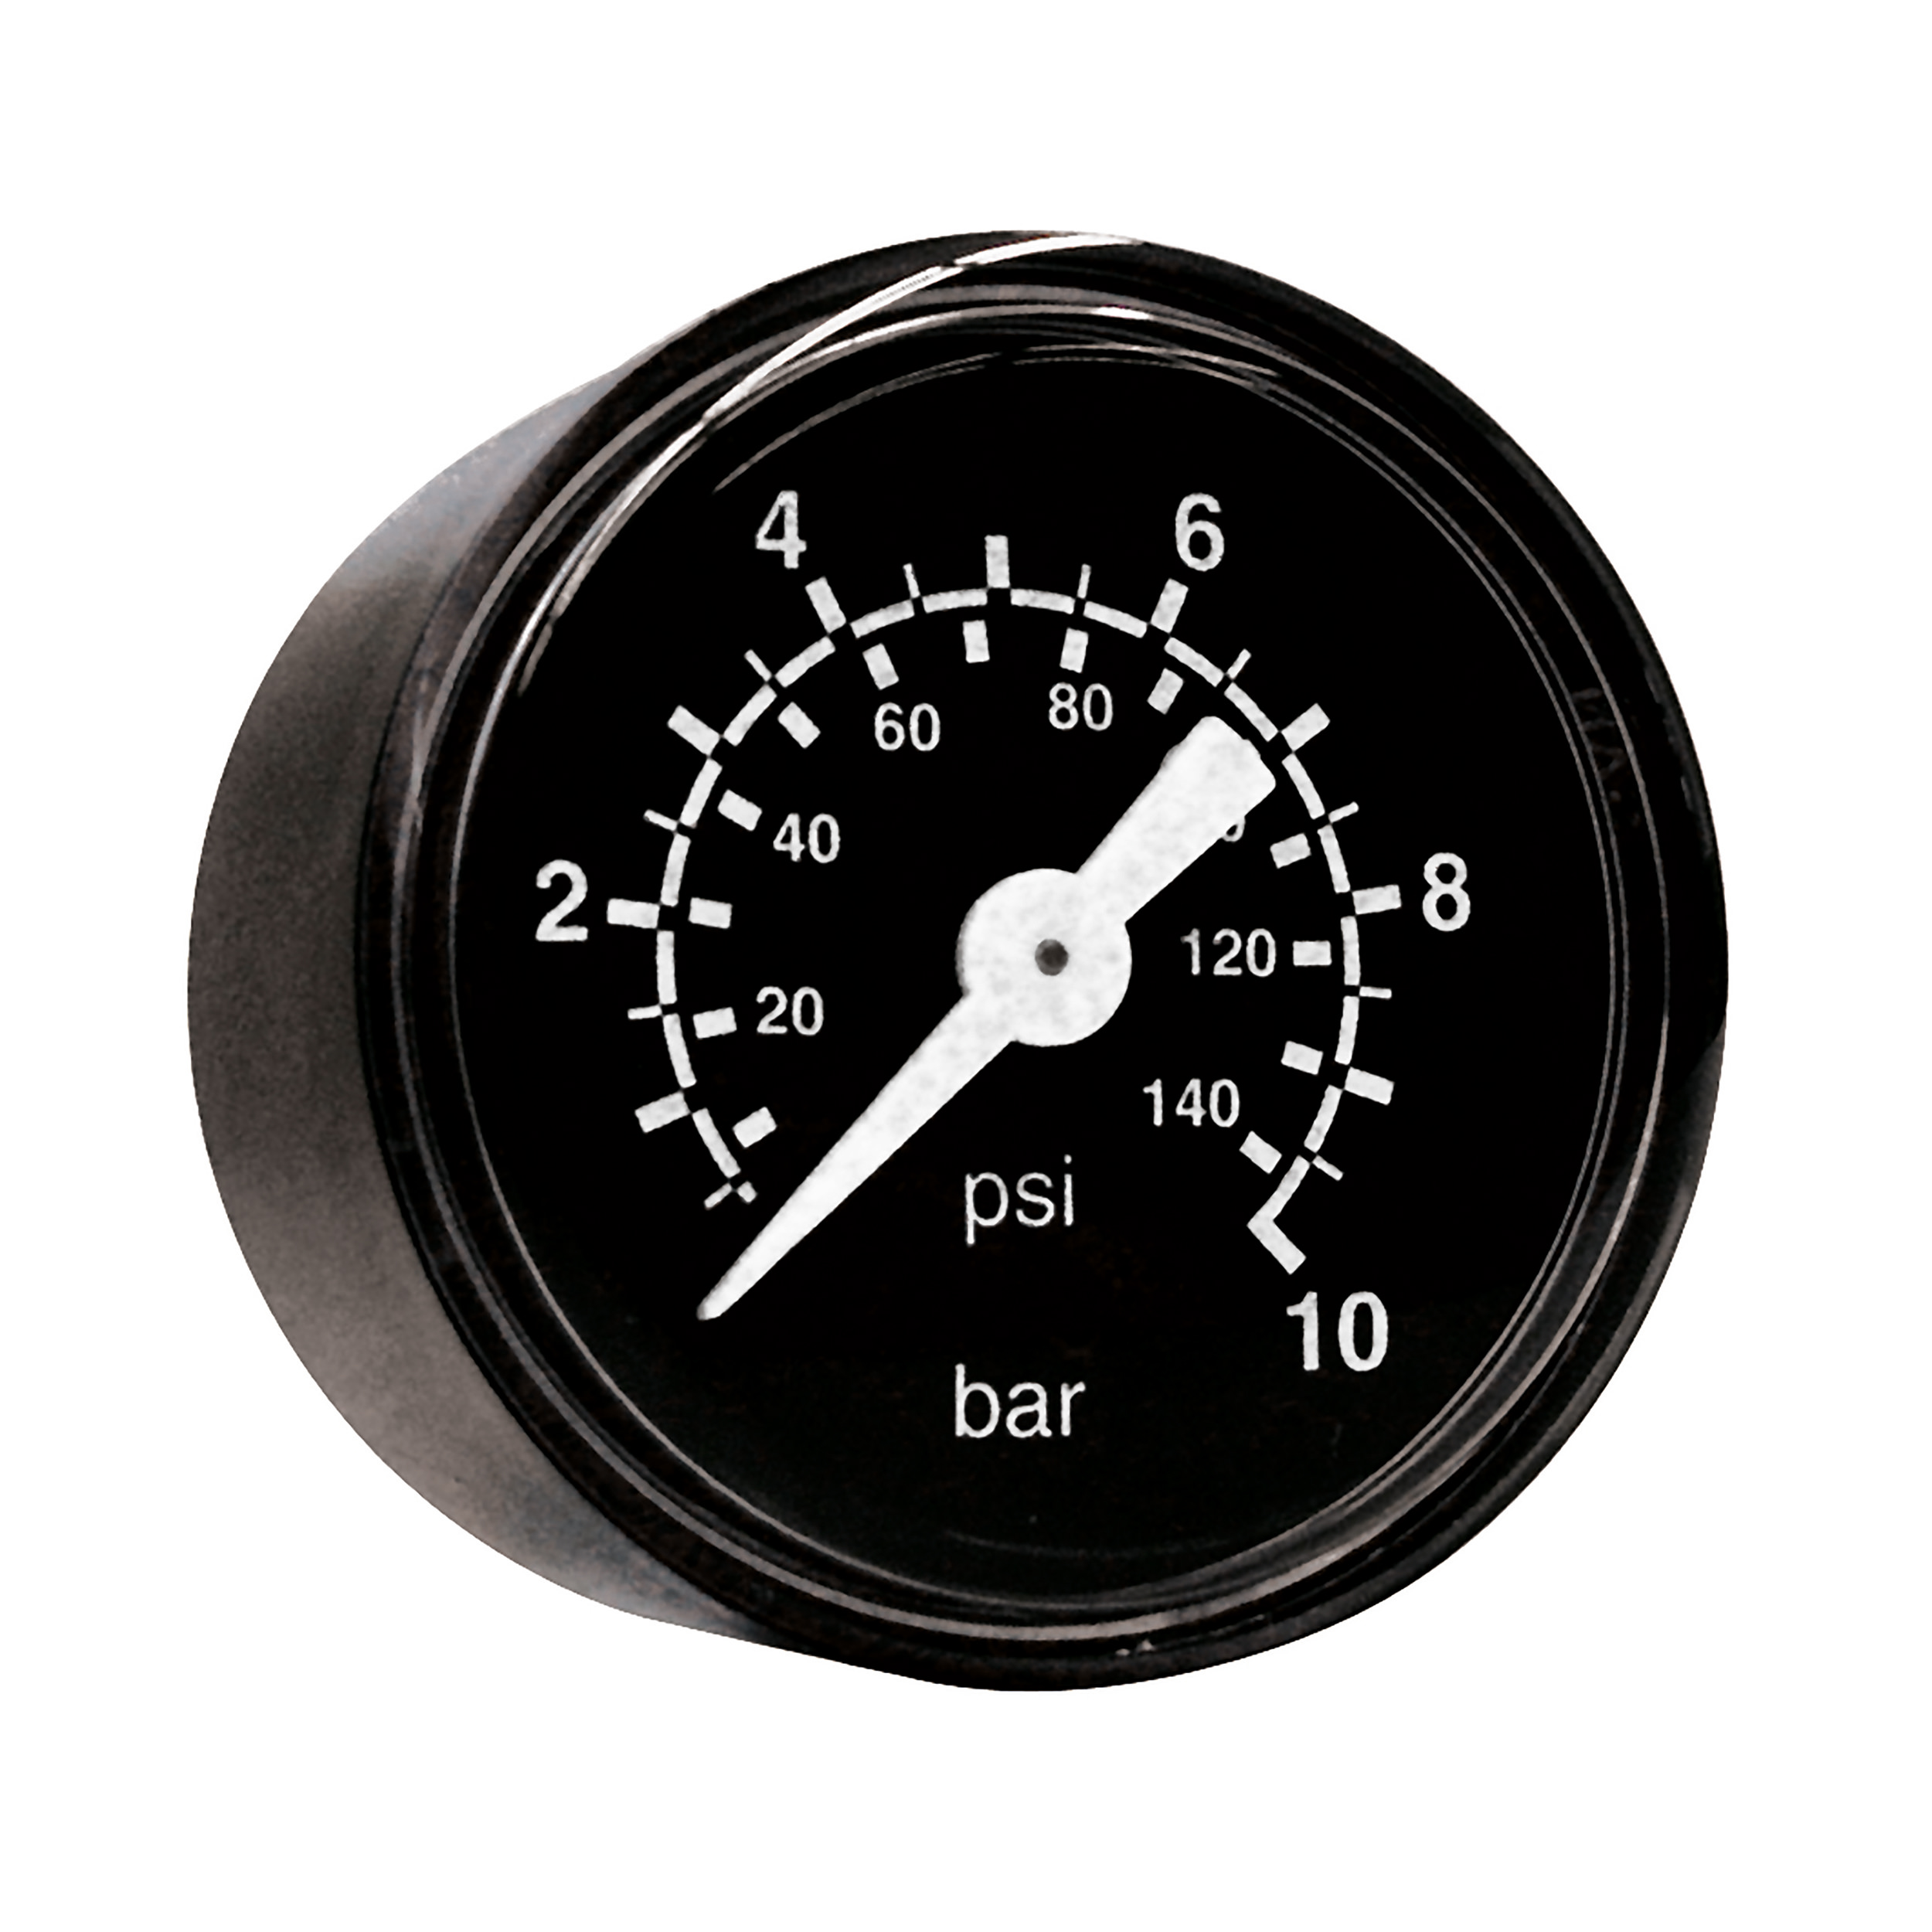 Rohrfeder-Manometer Ø40, Klasse 2,5, Grund/Aufdruck: schwarz/weiß, Anschluss waagrecht: G⅛, Anzeigebereich: 0–16 bar